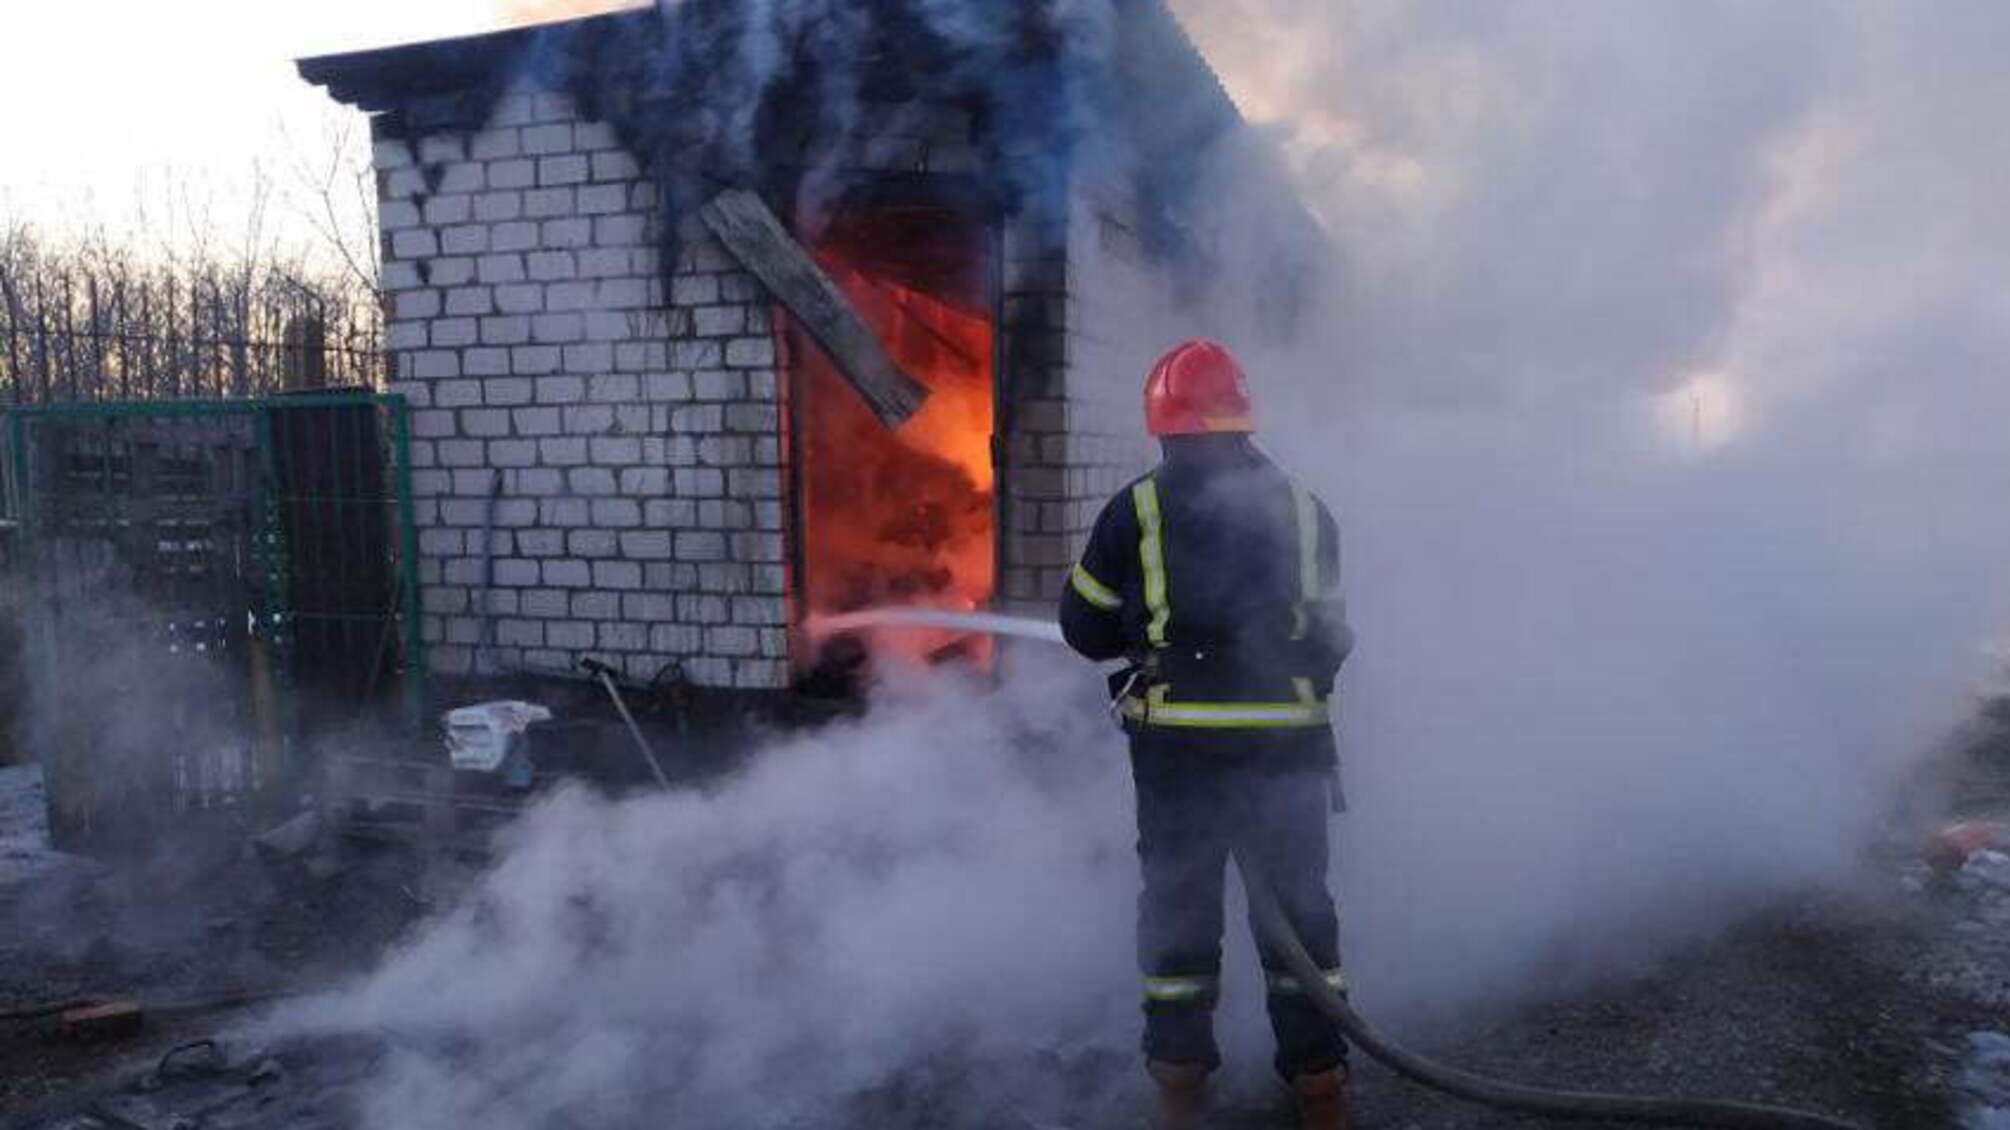 Миколаївська область: рятувальники ліквідували пожежу будівлі охорони на одному з підприємств м. Миколаєва